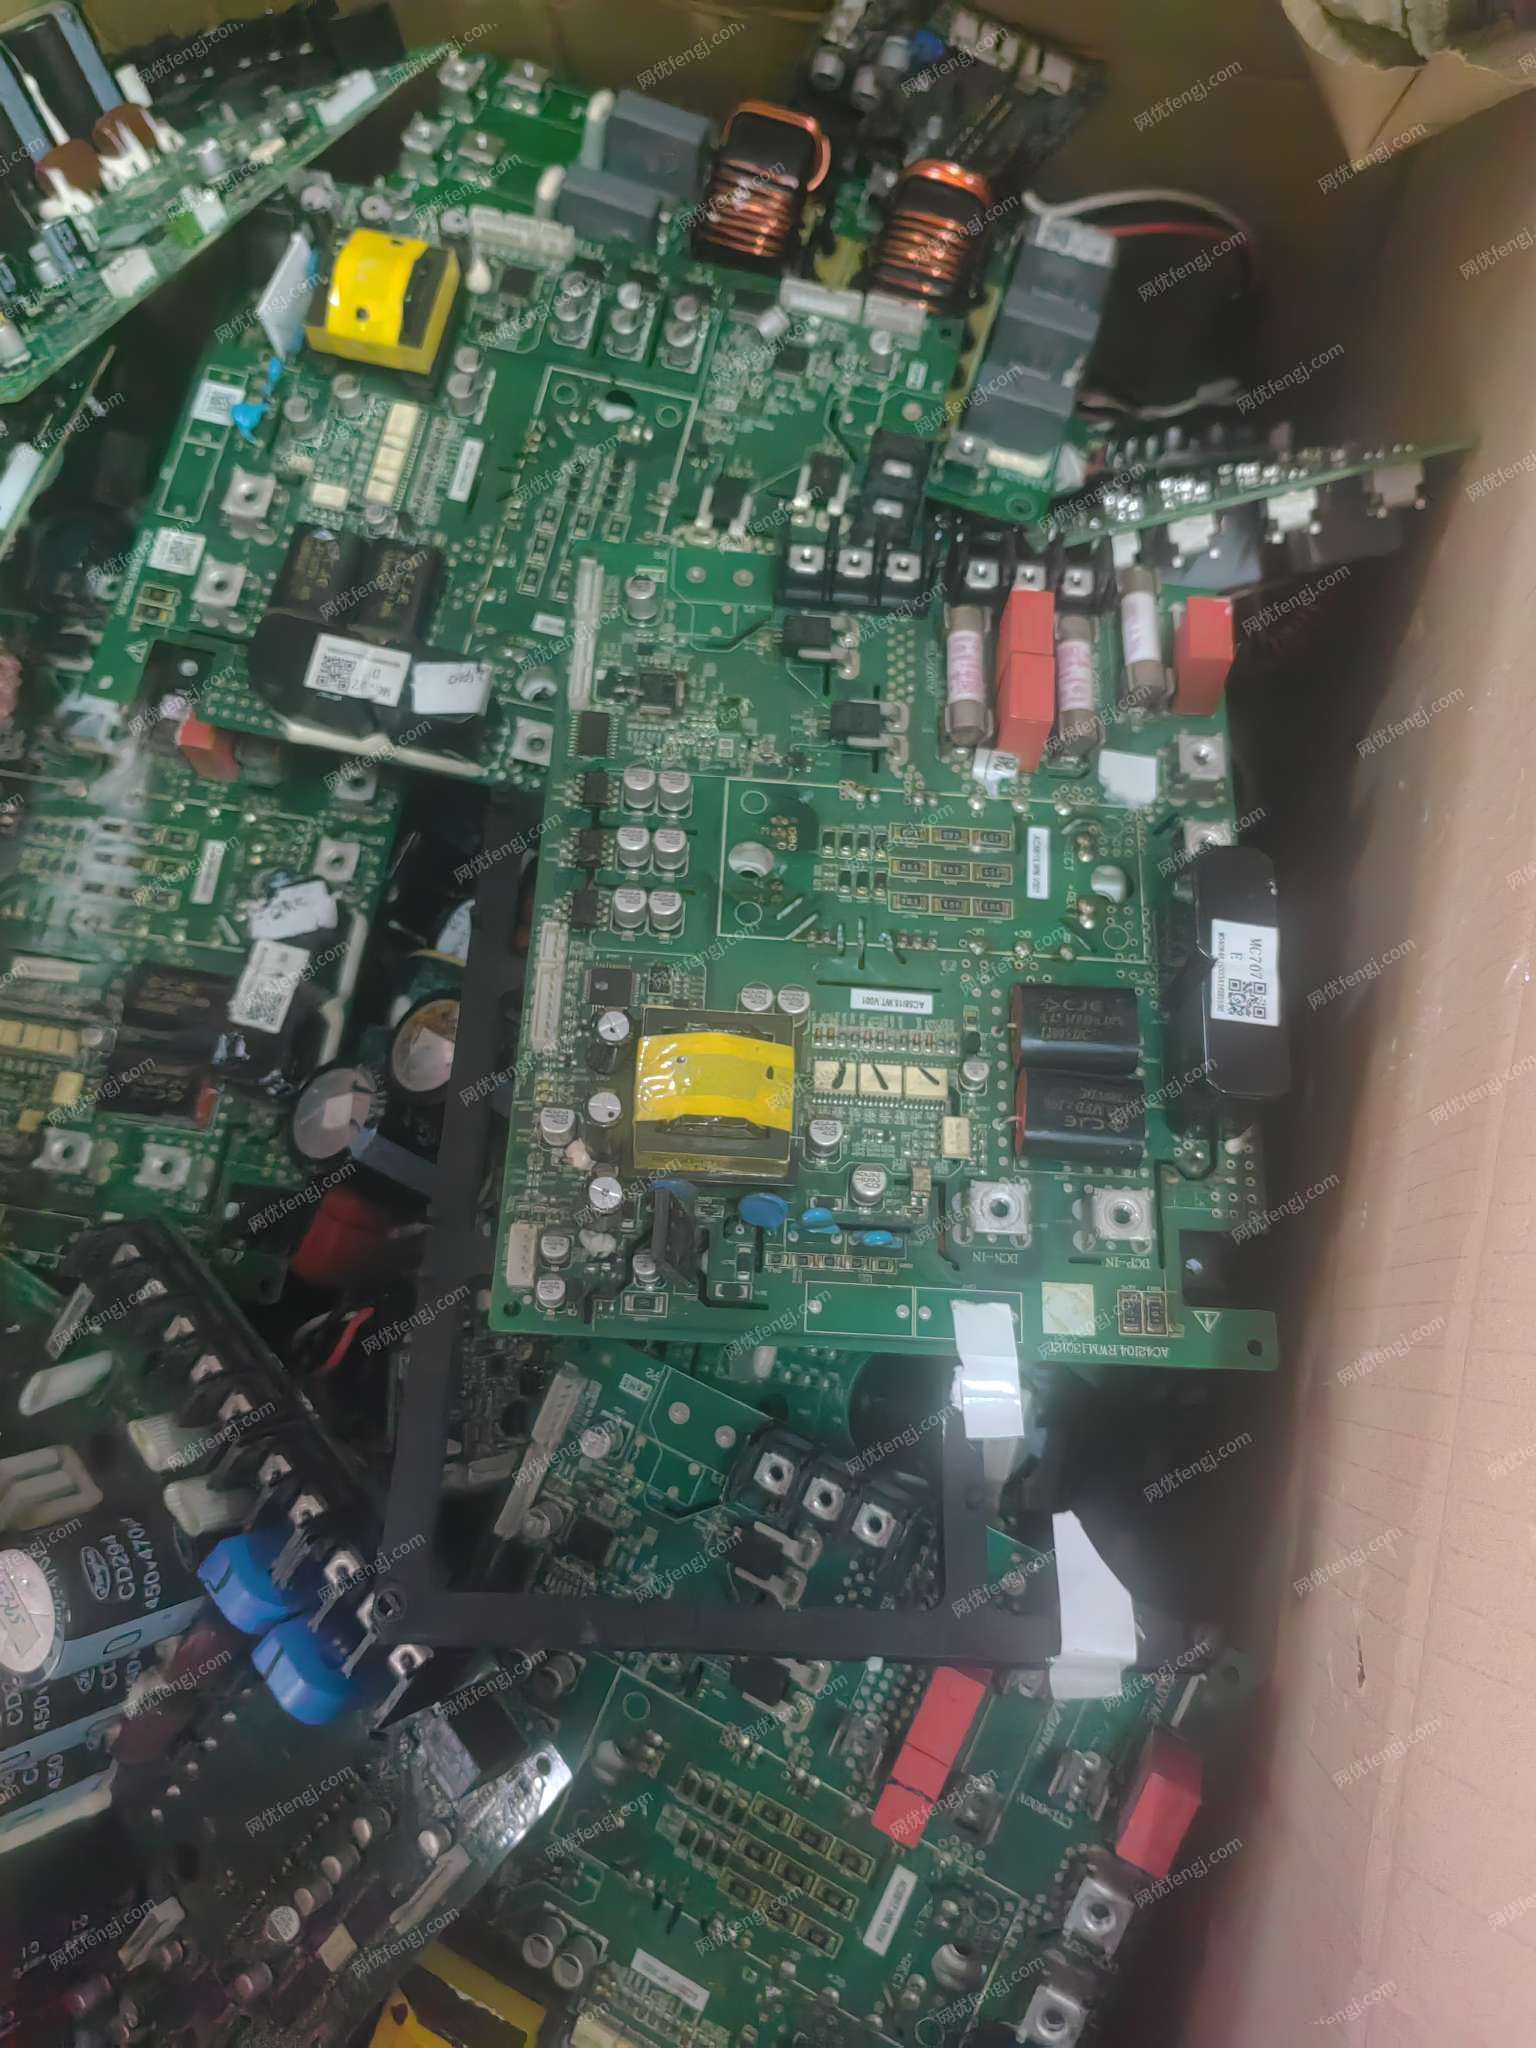 出售废旧压缩机变频板